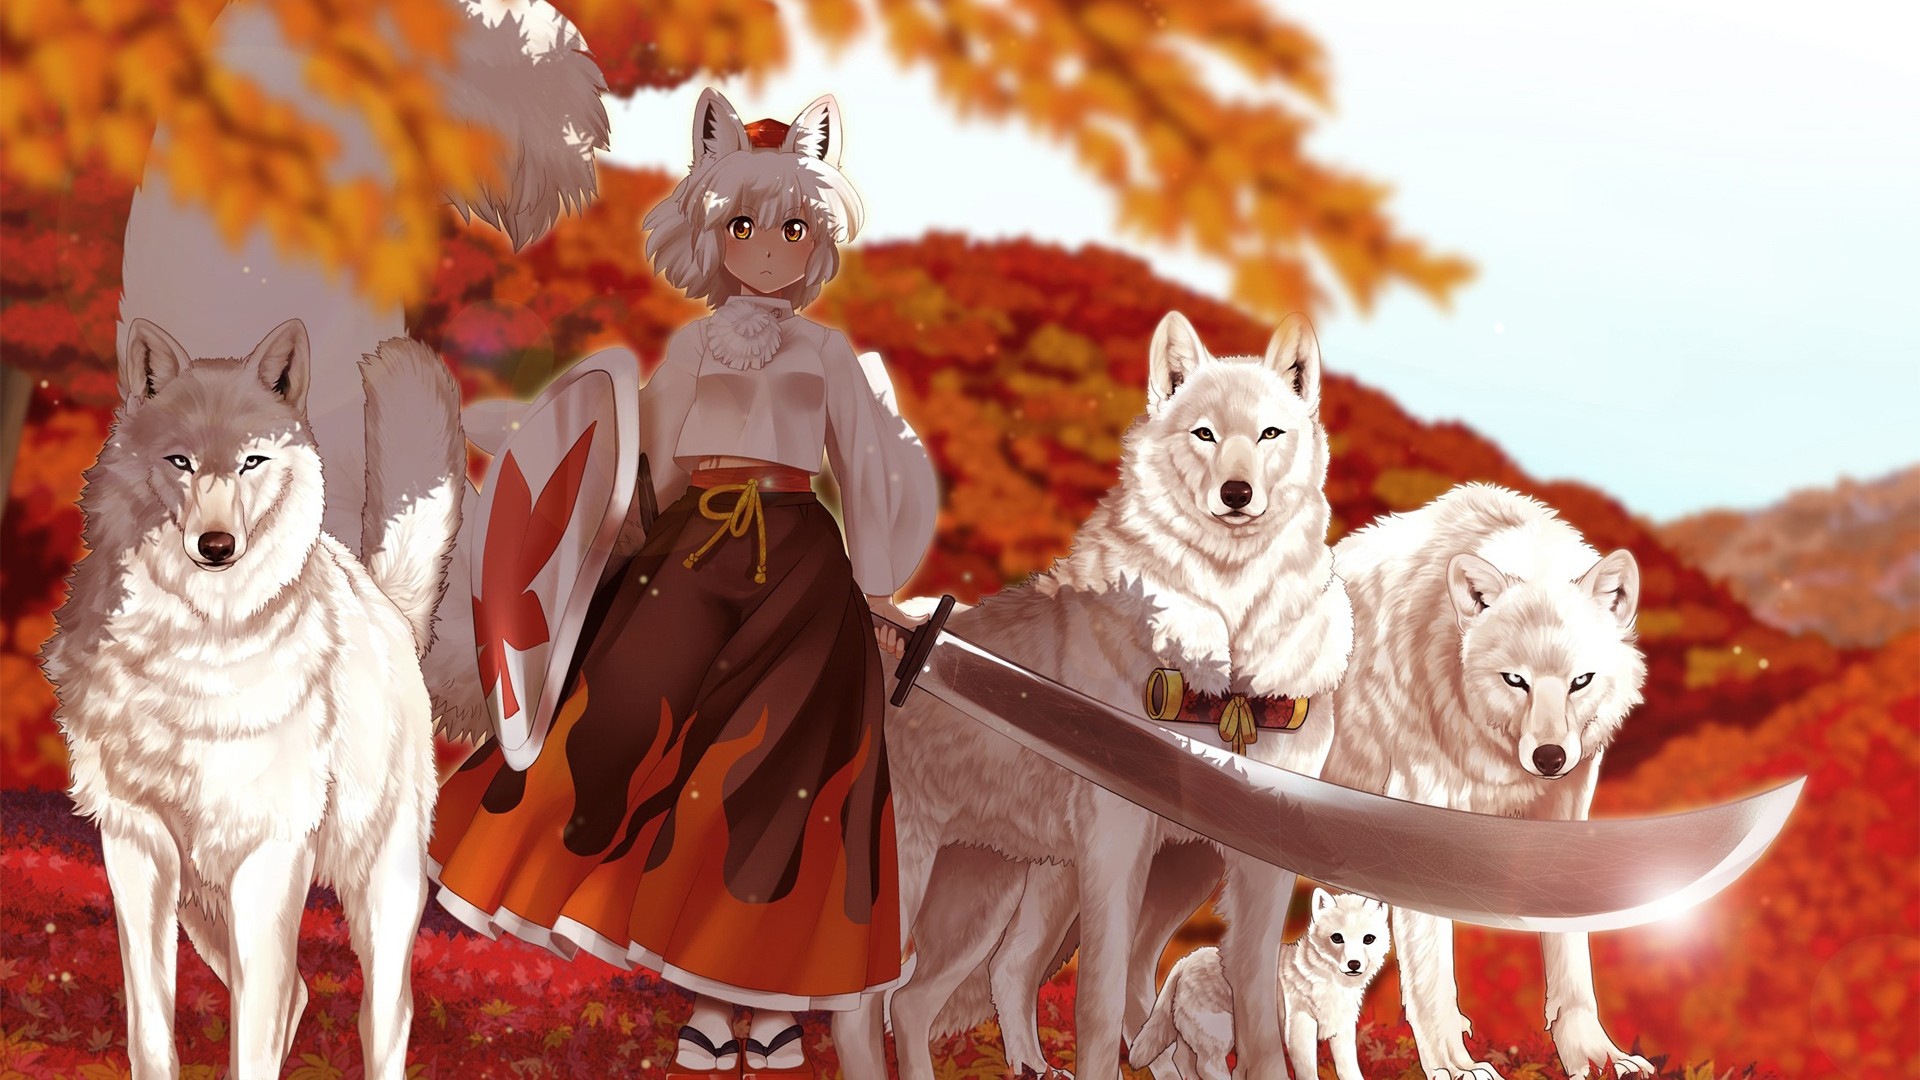 Wallpaper anime, girl, kimono, sword, wolf, autumn